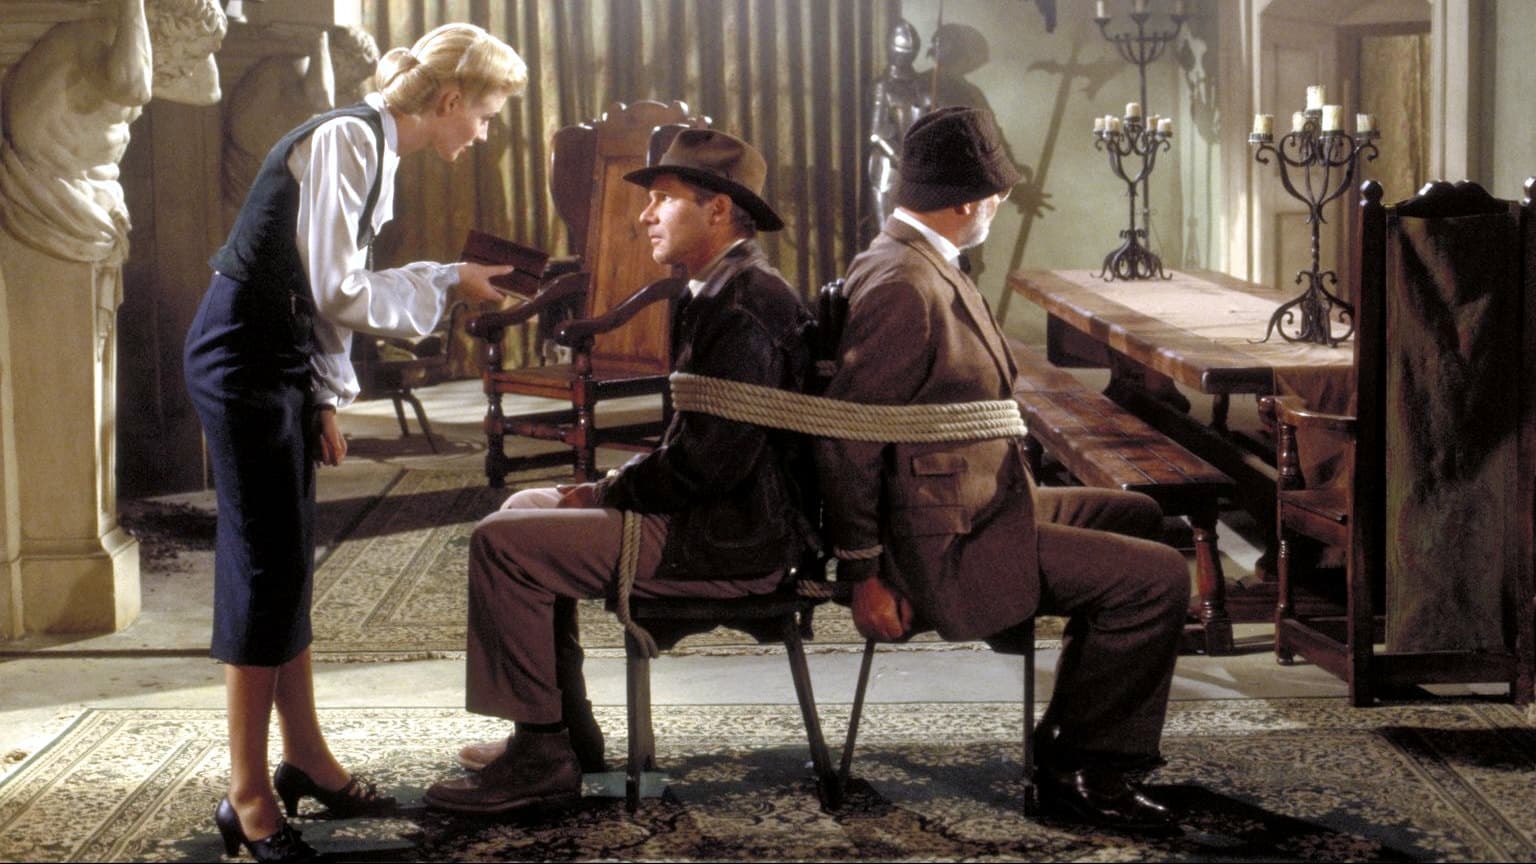 Indiana Jones och det sista korståget (1989)